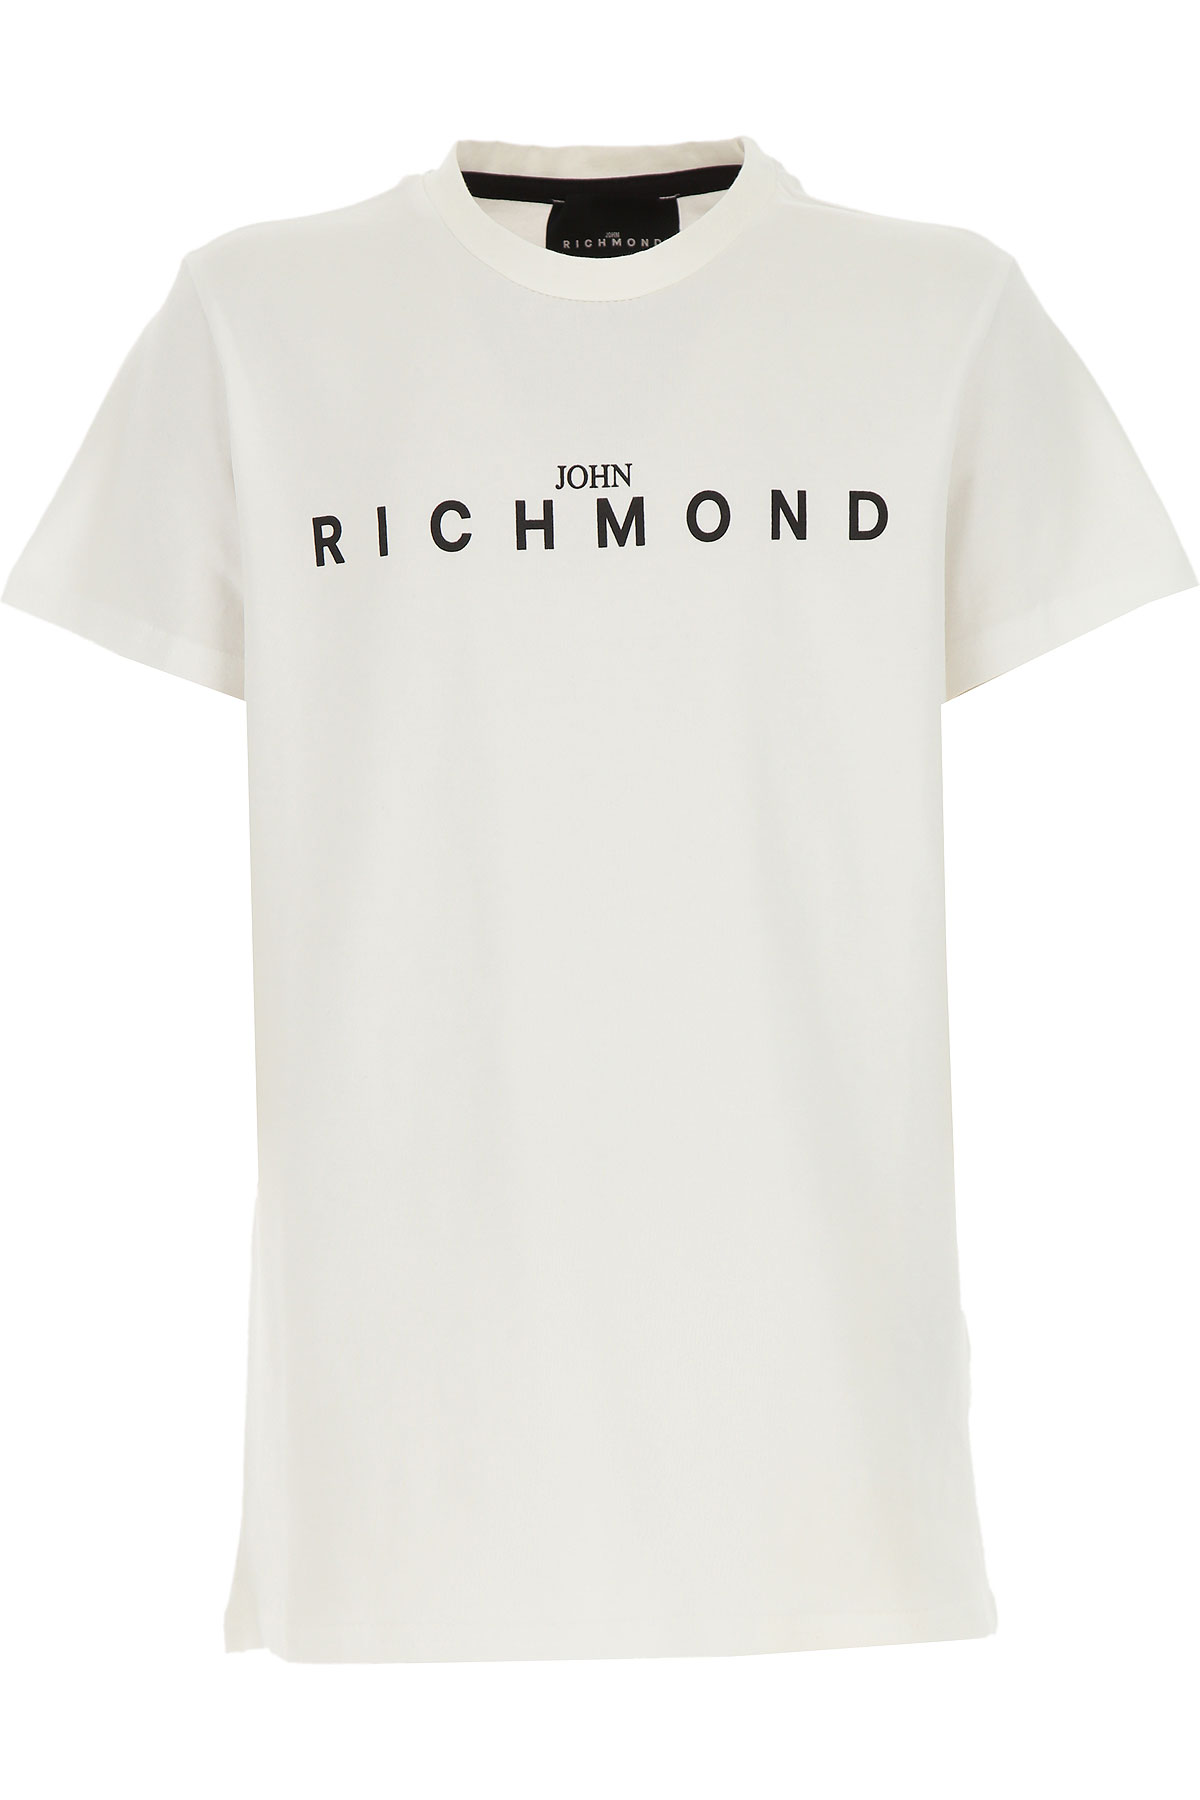 Richmond Kinder T-Shirt für Jungen Günstig im Sale, Weiss, Baumwolle, 2017, 10Y 12Y 4Y 8Y